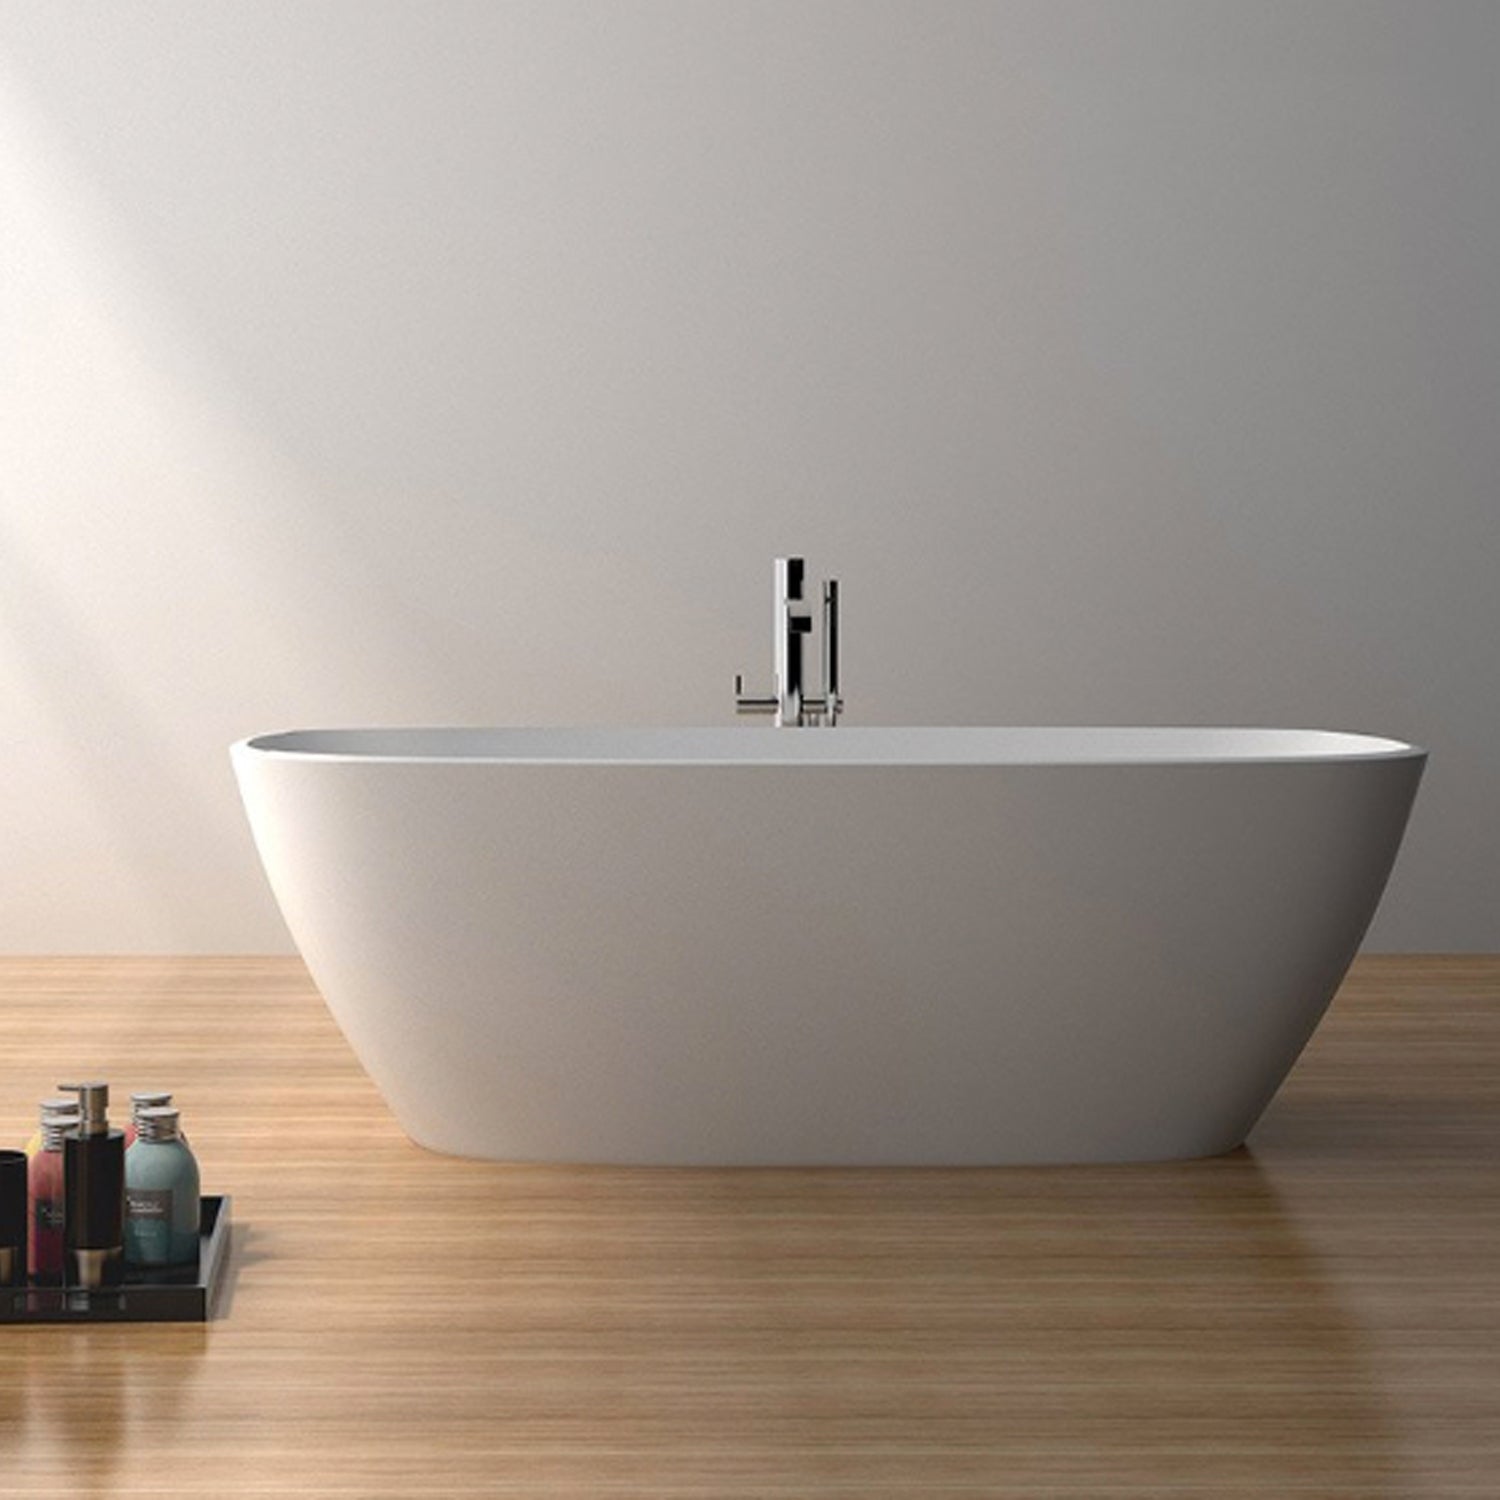 Bains Design - Le spécialiste de la salle de bain design